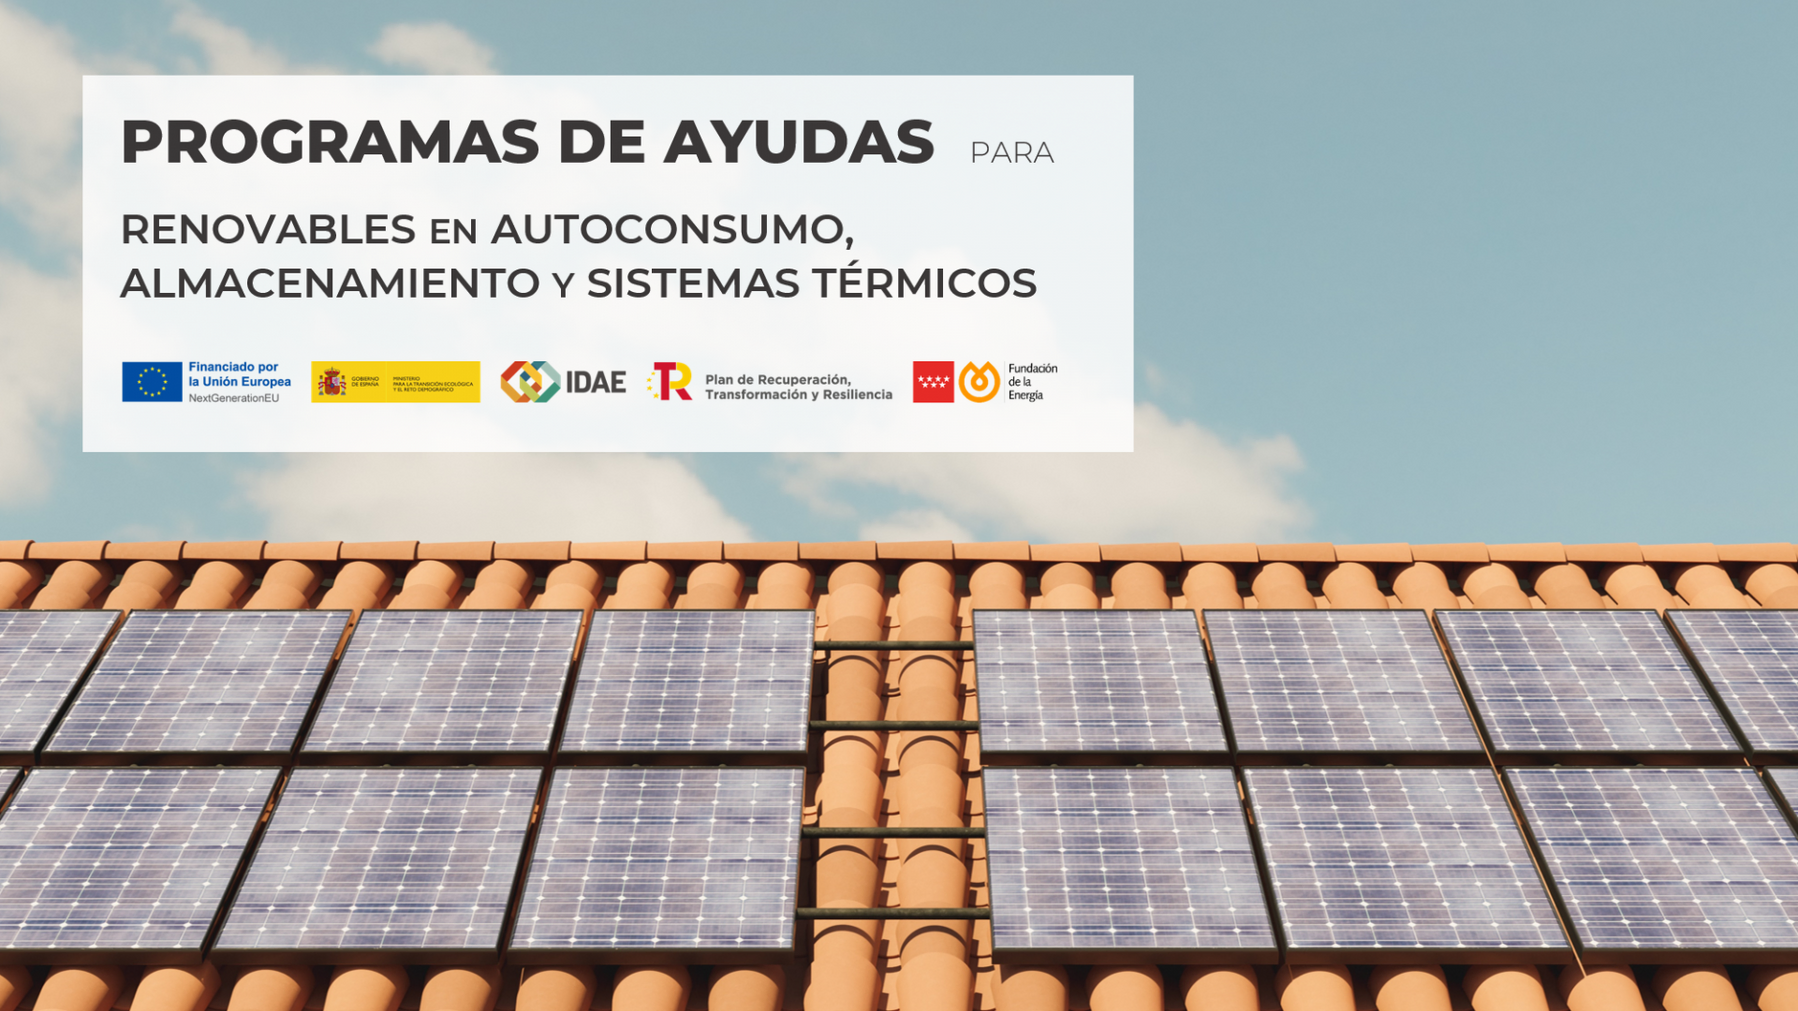 La Comunidad de Madrid anuncia ayudas de hasta 3.000€ para instalaciones solares